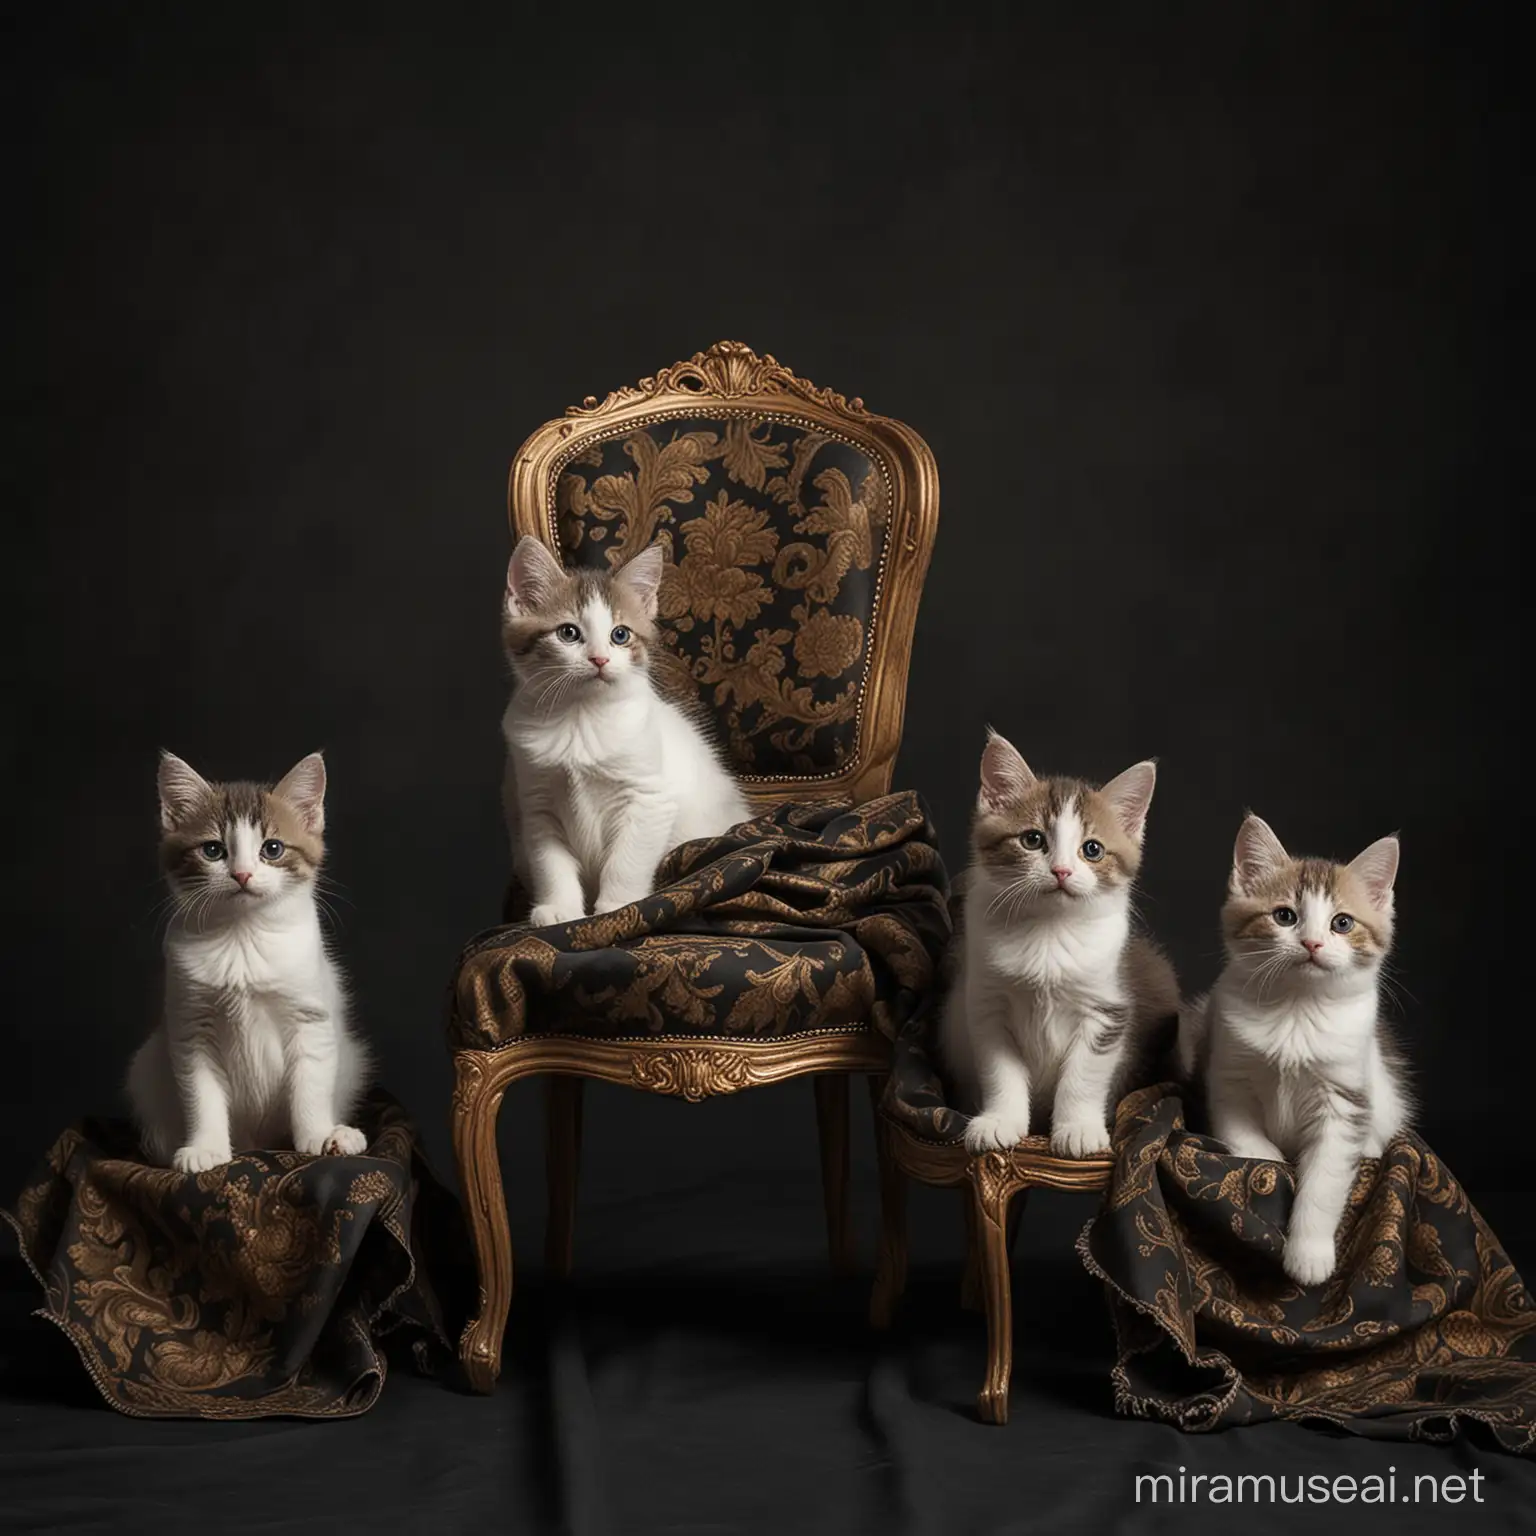 crie um fundo escuro com uma cadeira e panos, lembrando uma pintura barroca, e adicione 5 gatinhos